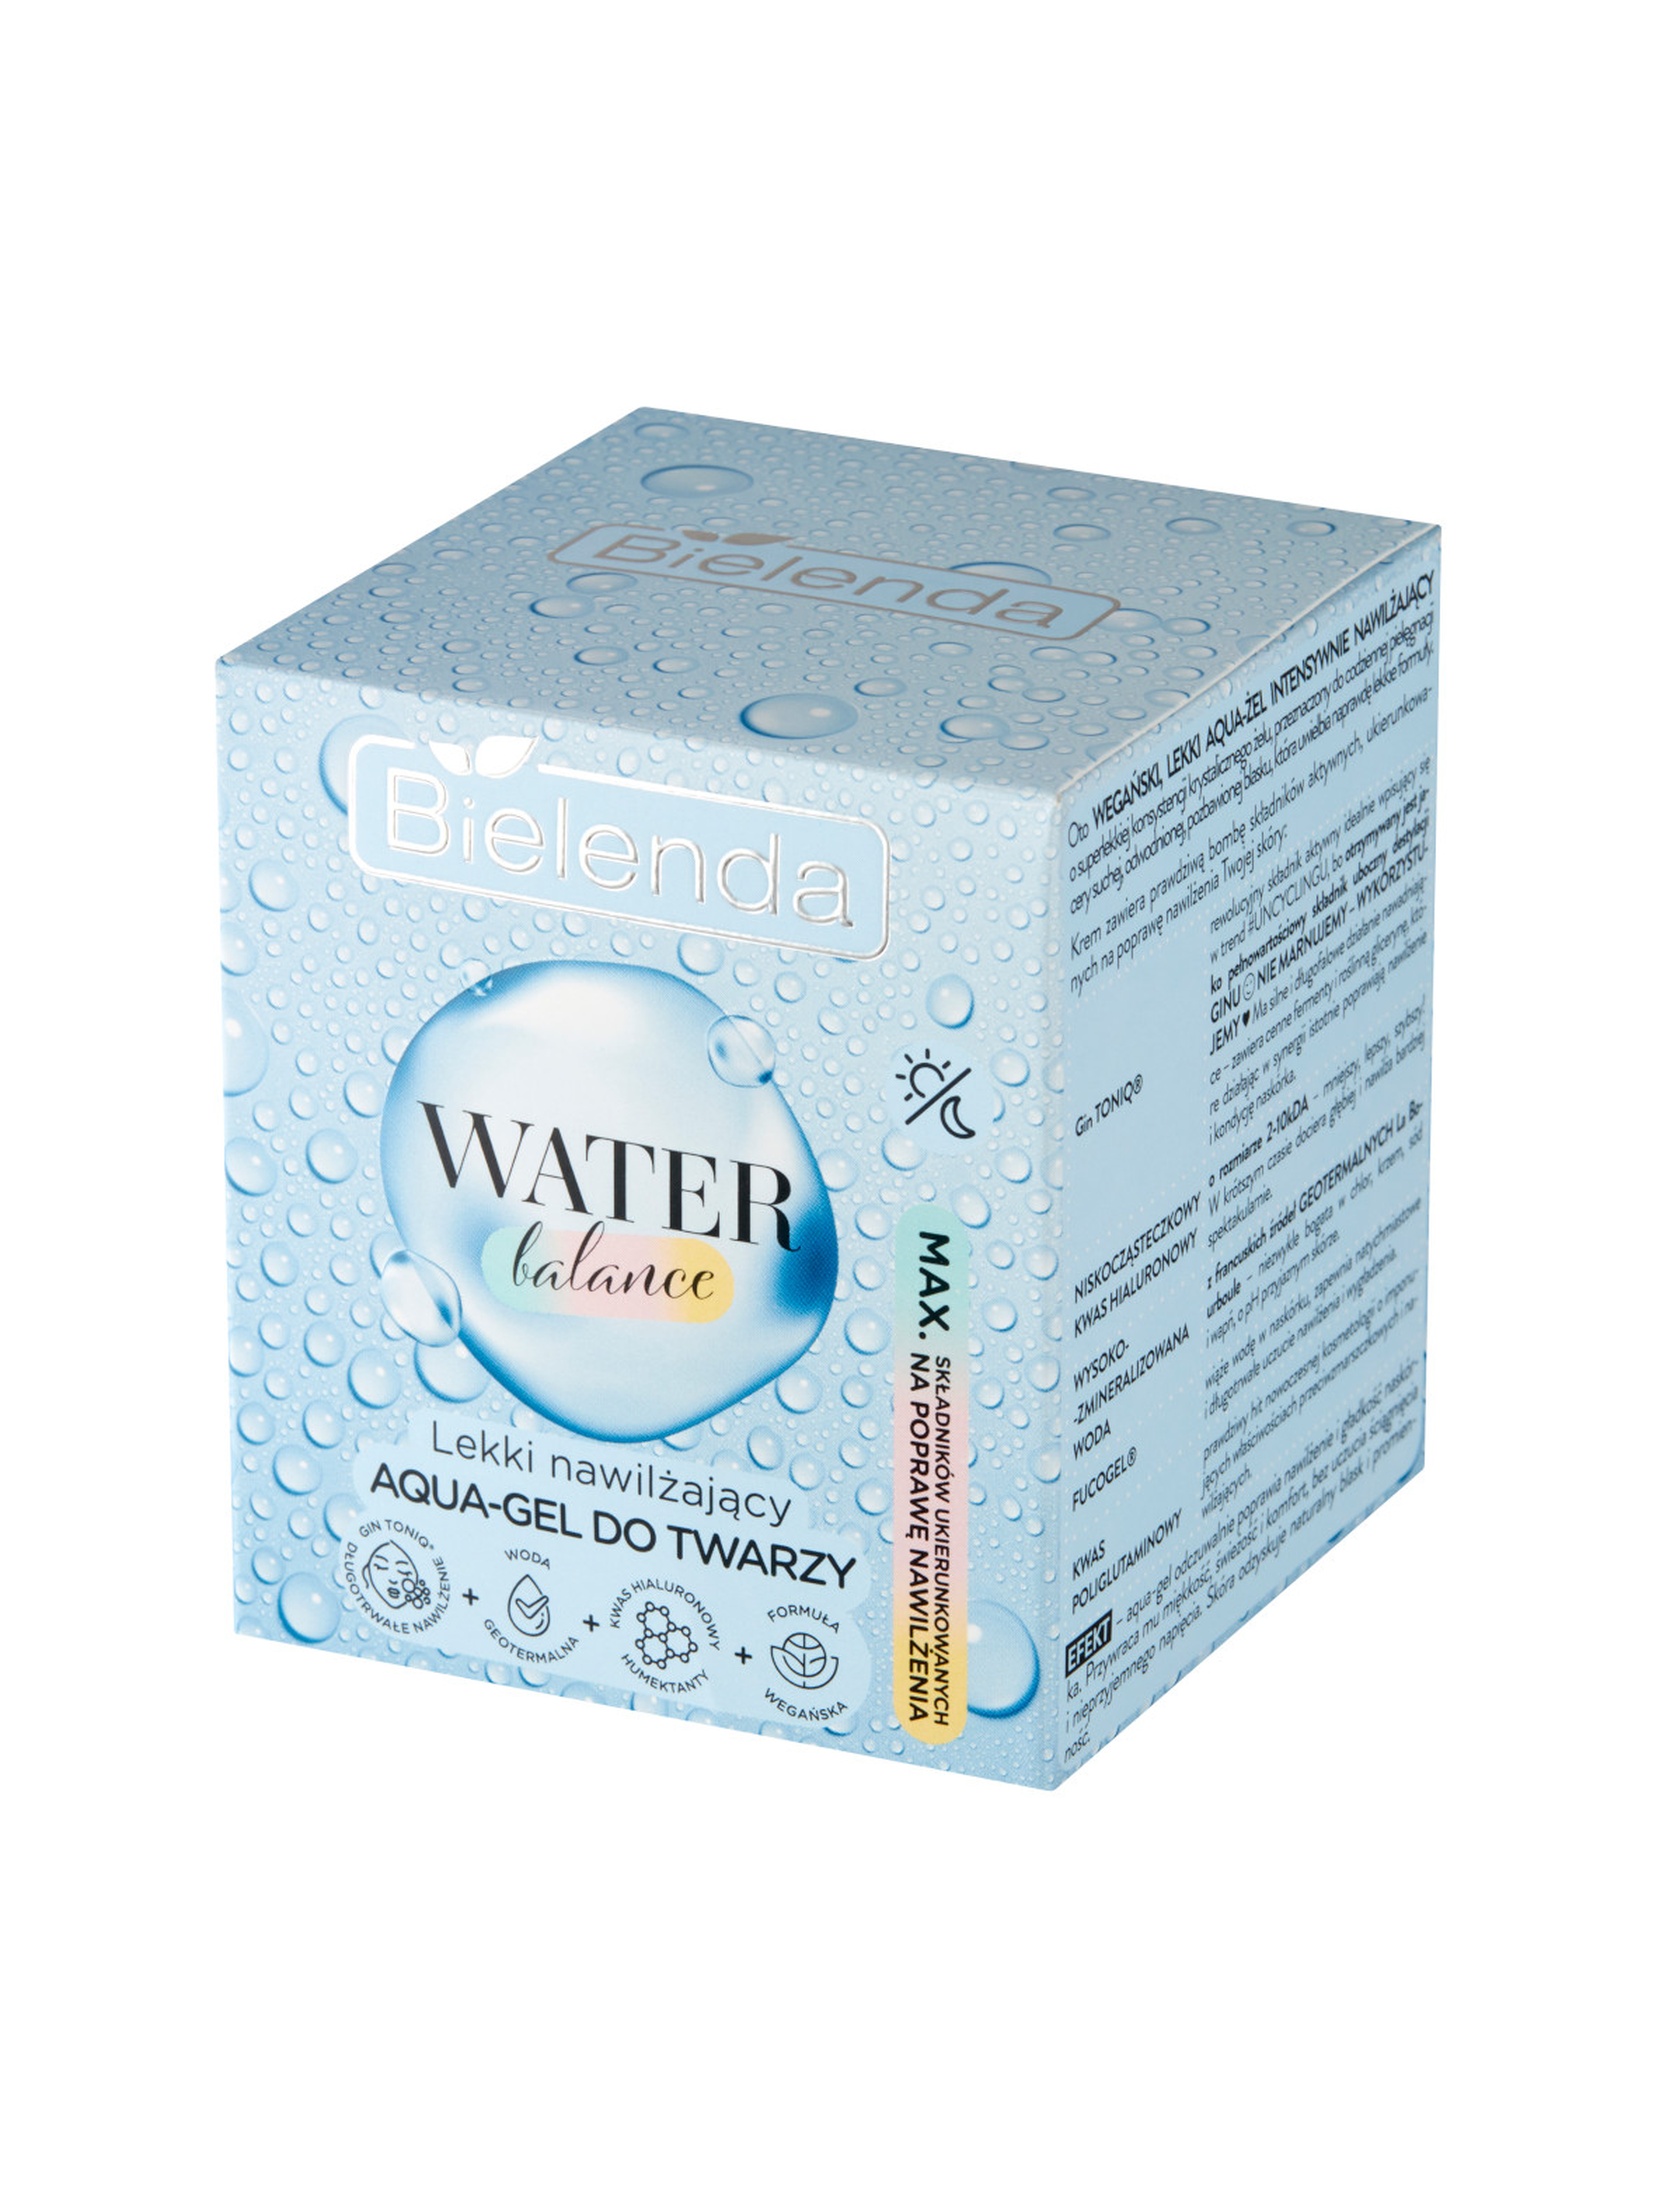 WATER BALANCE Lekki nawilżający aqua-gel do twarzy, 50g